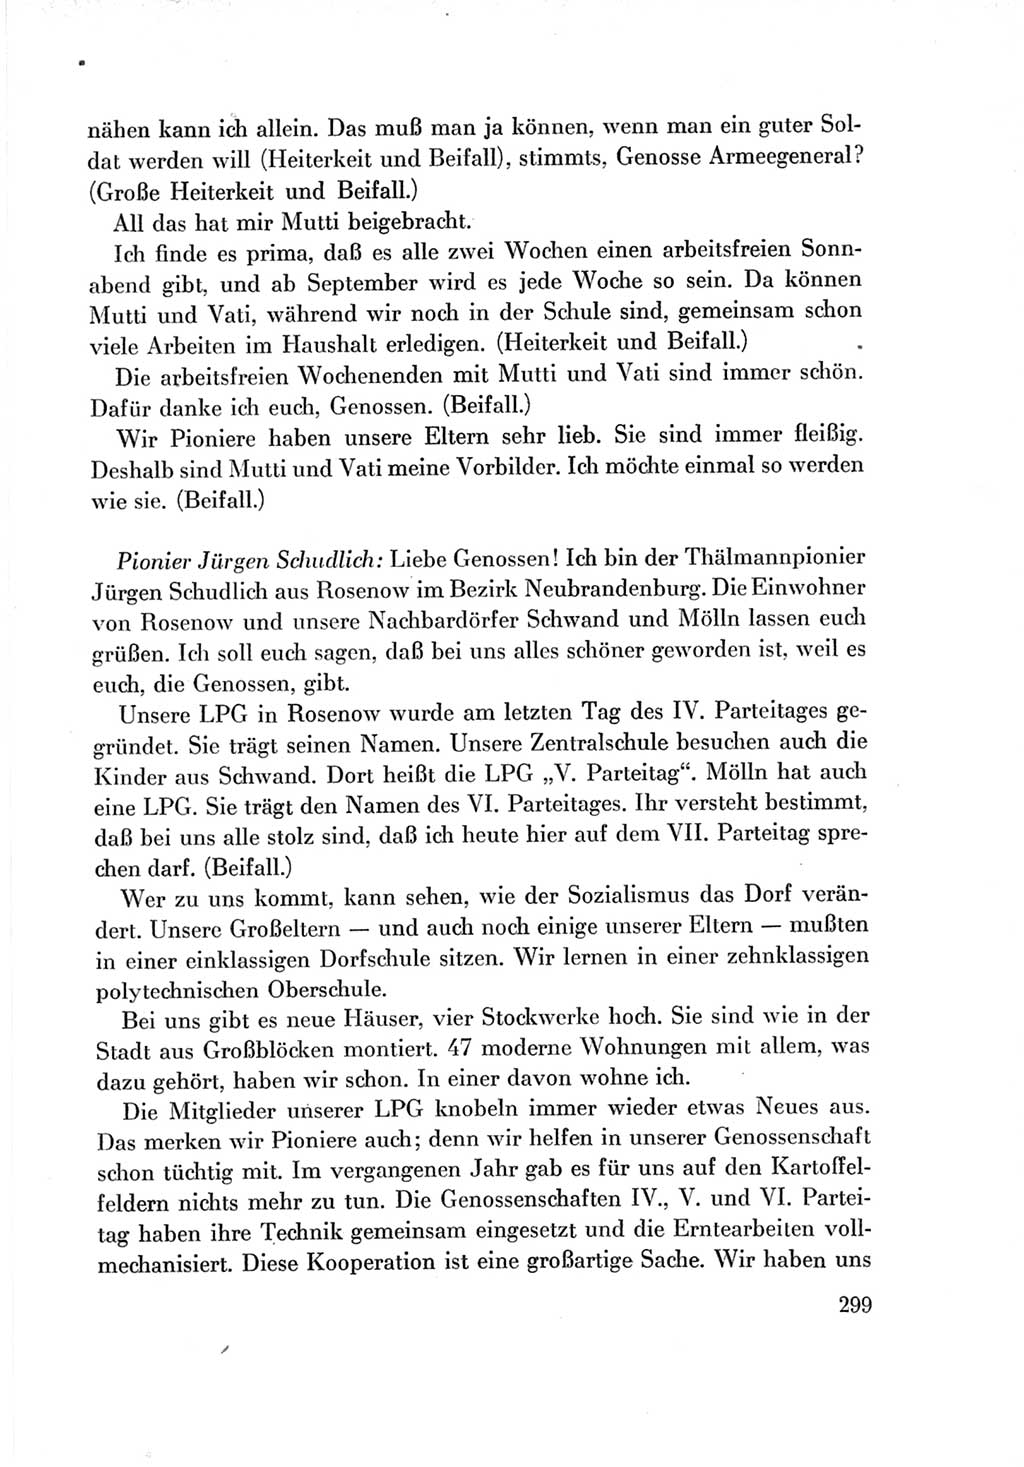 Protokoll der Verhandlungen des Ⅶ. Parteitages der Sozialistischen Einheitspartei Deutschlands (SED) [Deutsche Demokratische Republik (DDR)] 1967, Band Ⅱ, Seite 299 (Prot. Verh. Ⅶ. PT SED DDR 1967, Bd. Ⅱ, S. 299)